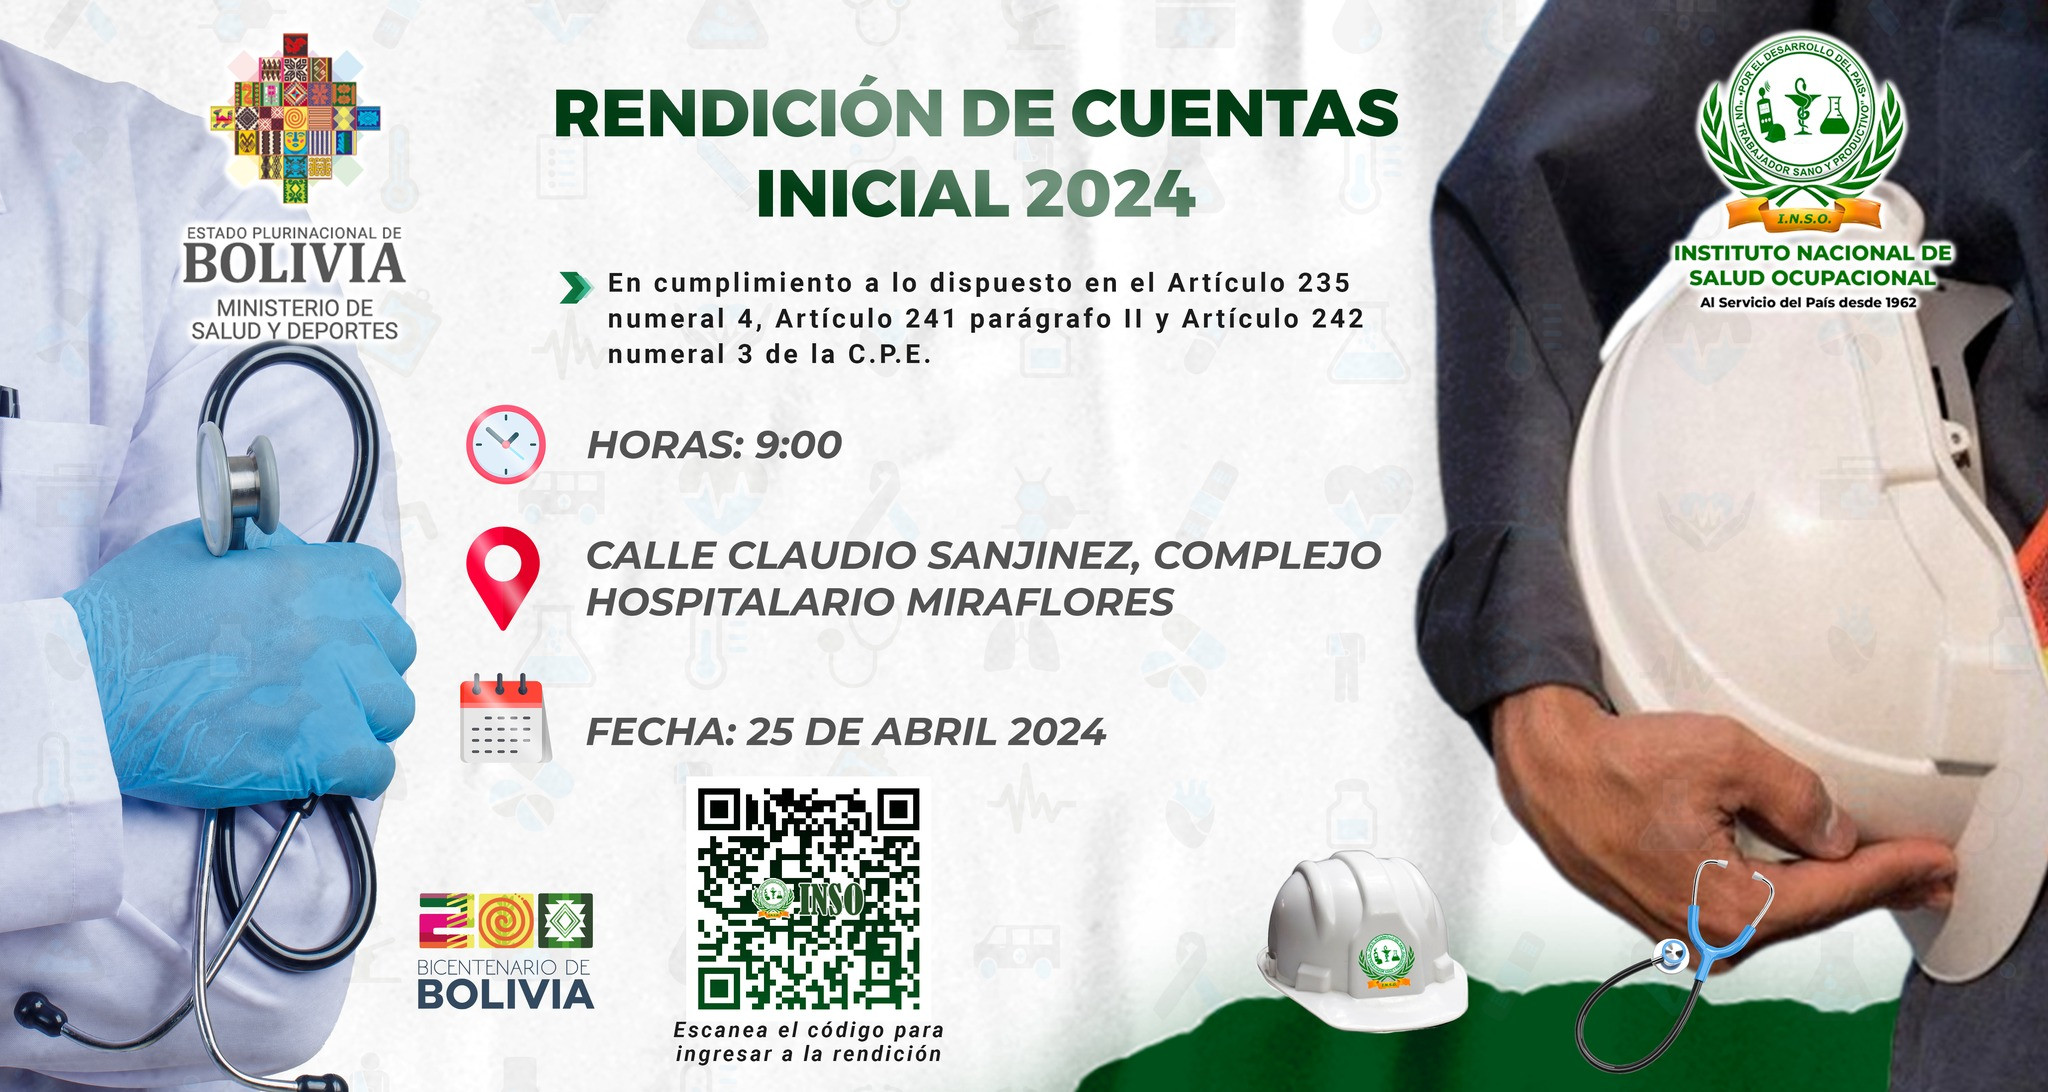 RENDICIÓN DE CUENTAS INCIAL 2024